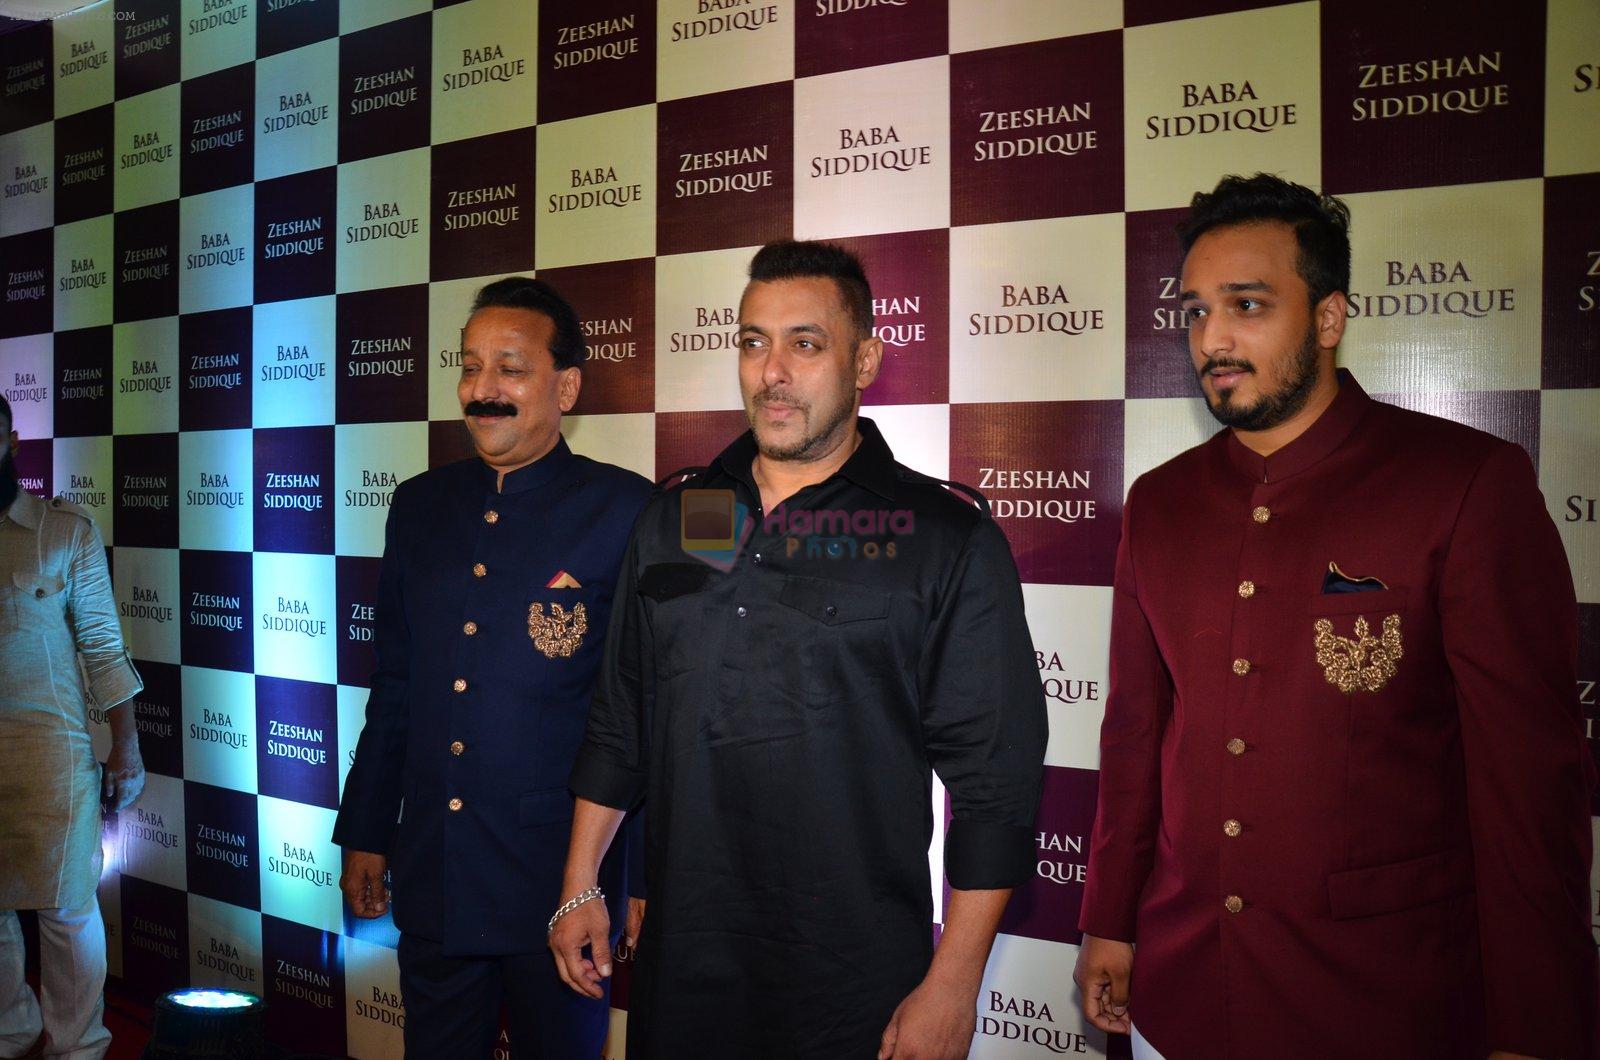 Salman Khan at Baba Siddique & Zeeshan Siddique's Iftaari celebration on 19th June 2016